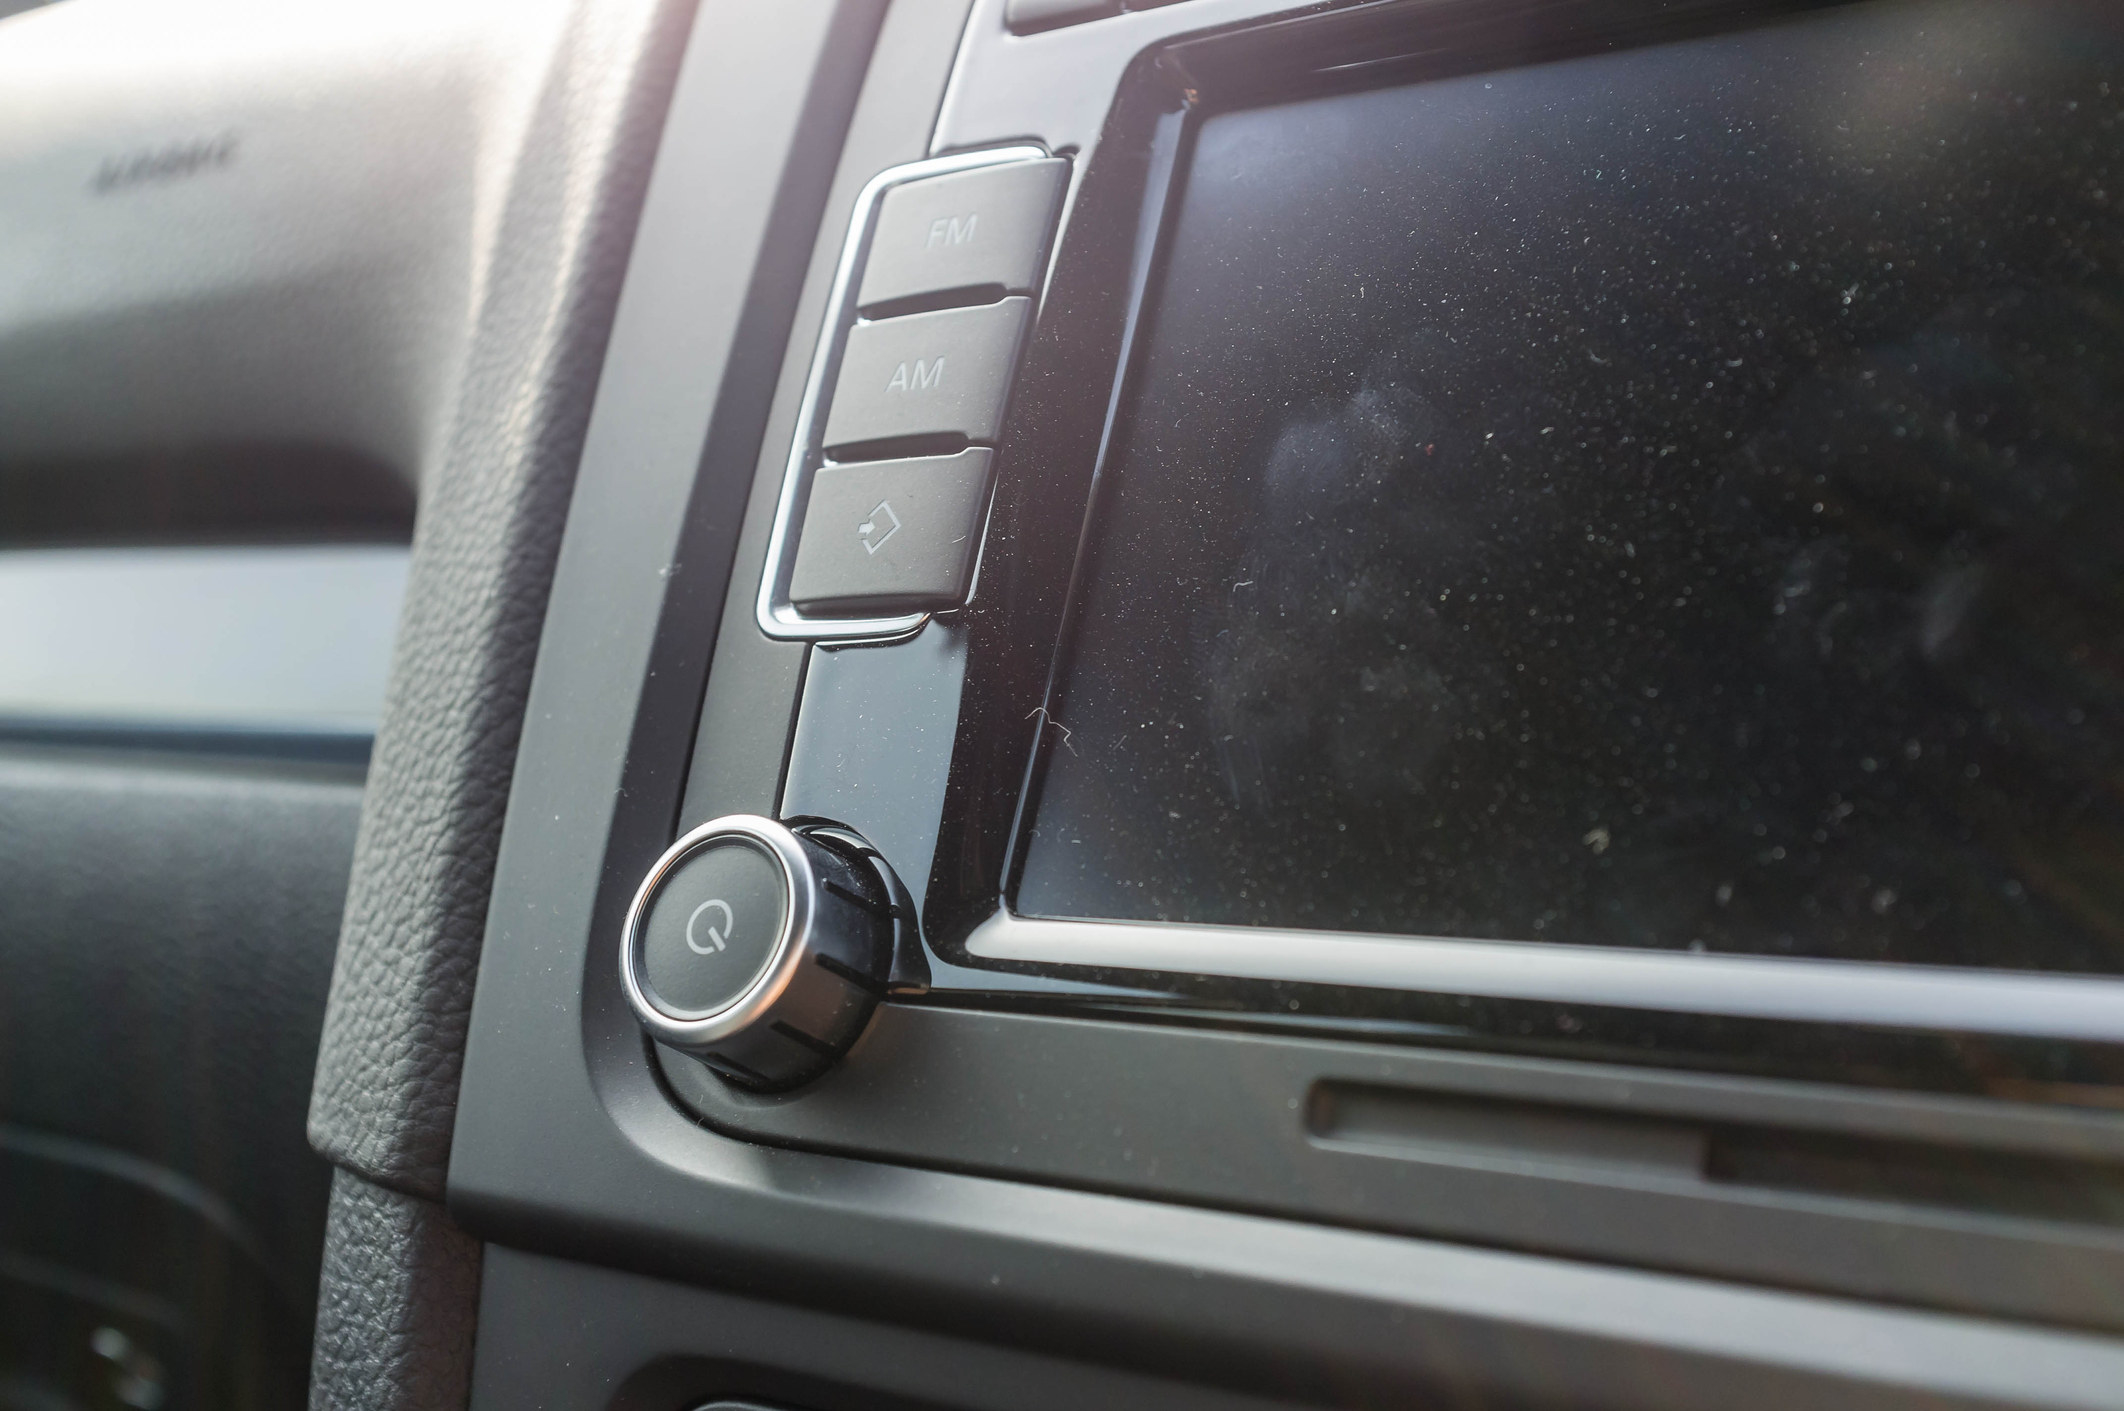 Blank radio screen in car